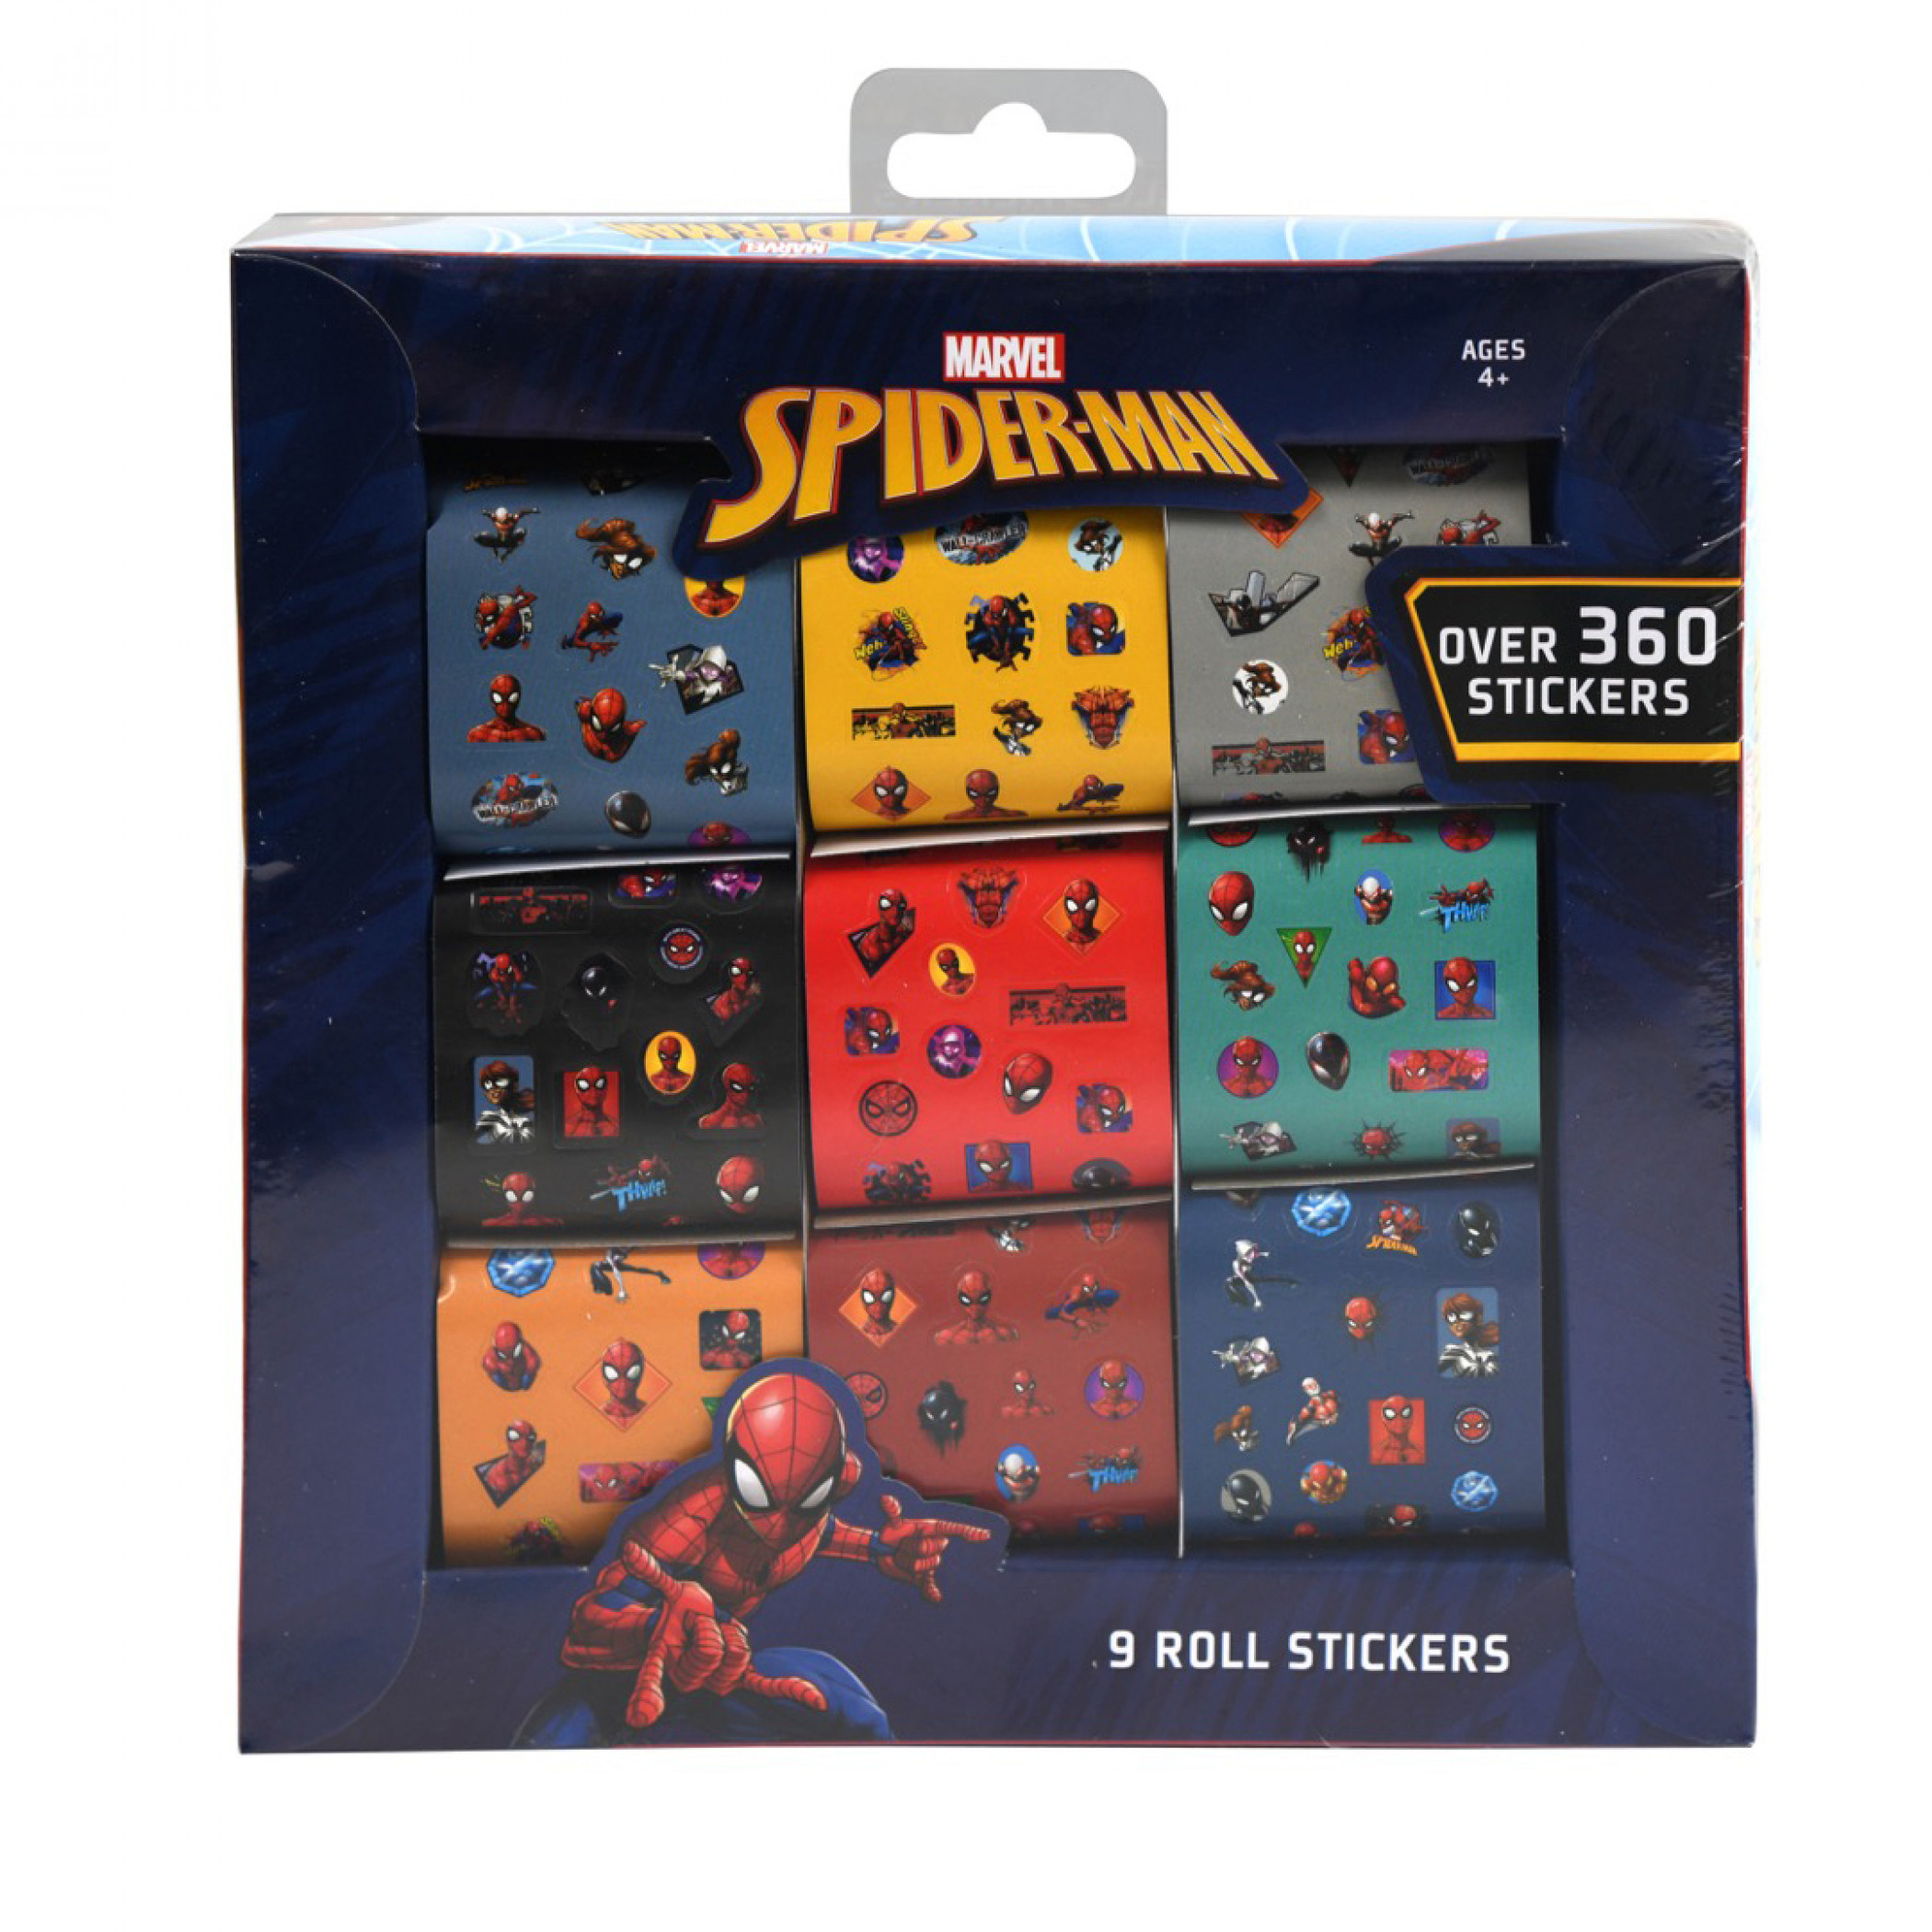 Spider-Man 9-Roll 360+ Sticker Box